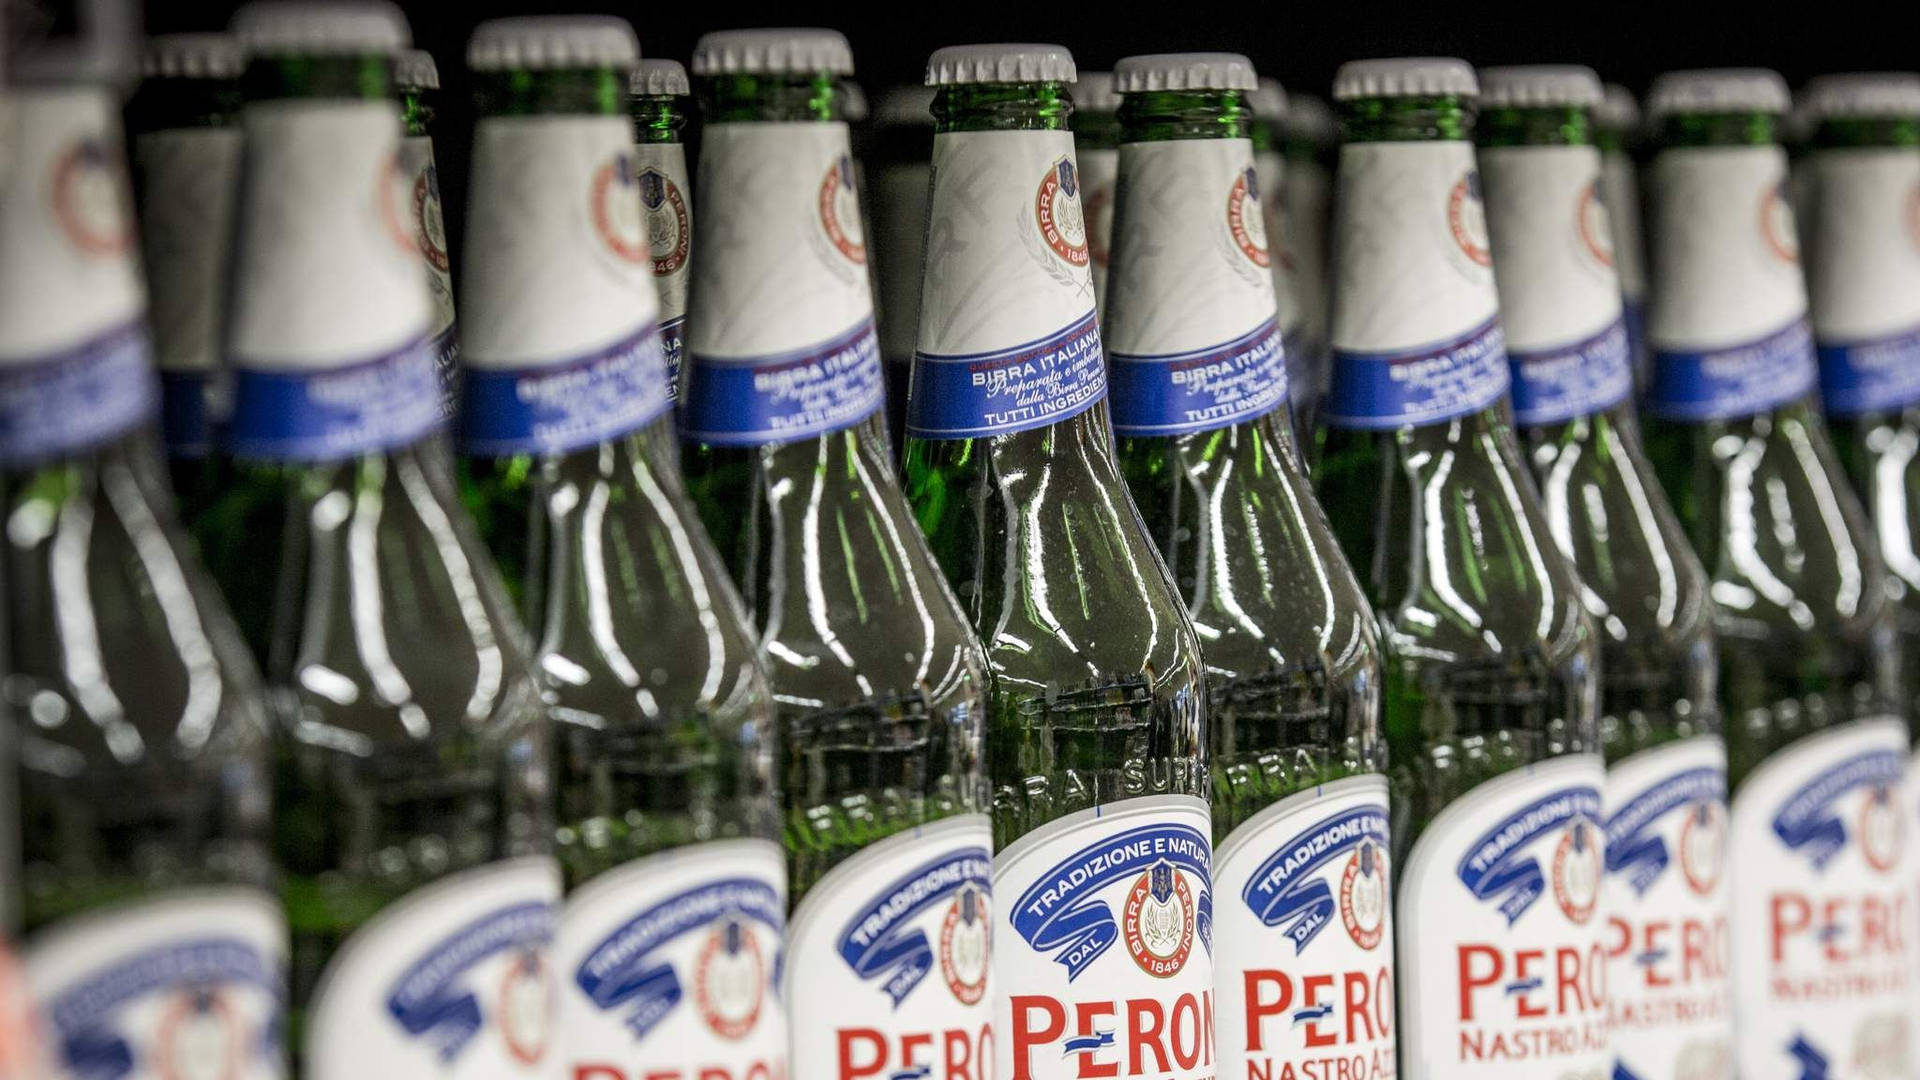 Stock Of Peroni Beer Wallpaper